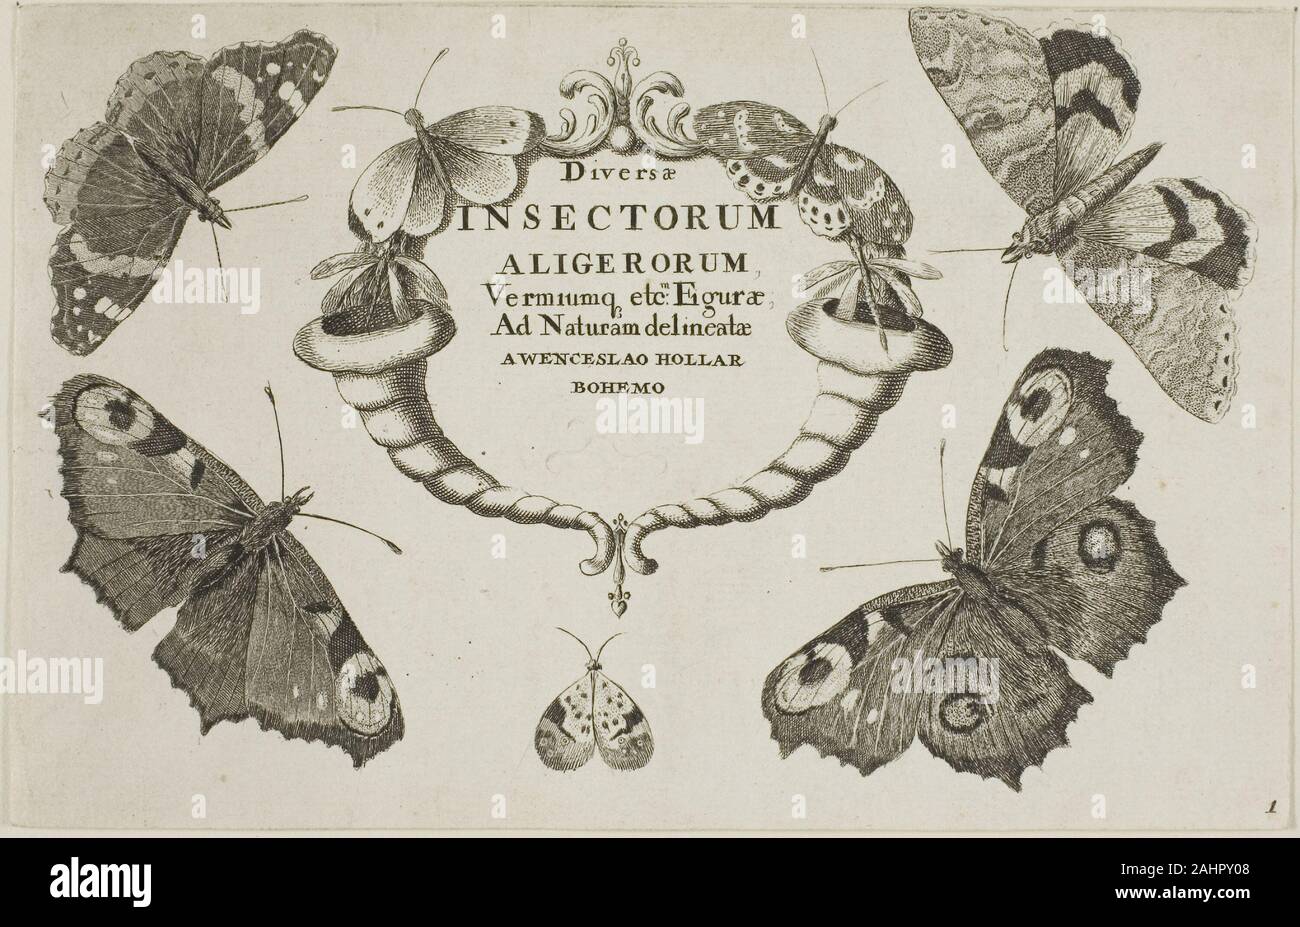 Wenceslaus Hollar. Page de titre de Diversae Insectorum. 1644-1652. La Bohême. Gravure sur papier vergé ivoire un artiste polyvalent et prolifique, Wenceslaus Hollar a produit près de 3 000 gravures au fil de quelques 50 ans, avec des sujets allant de la mode et l'art du portrait à l'architecture et de paysage. Cette gravure est la page de titre d'une série de six représentations scientifiques d'insectes et autres petites créatures. Remarquables par leur virtuosité et détail, la présentation technique de ces œuvres est fort probablement attribuable à l'invention du microscope à la fin du 16ème siècle. Banque D'Images